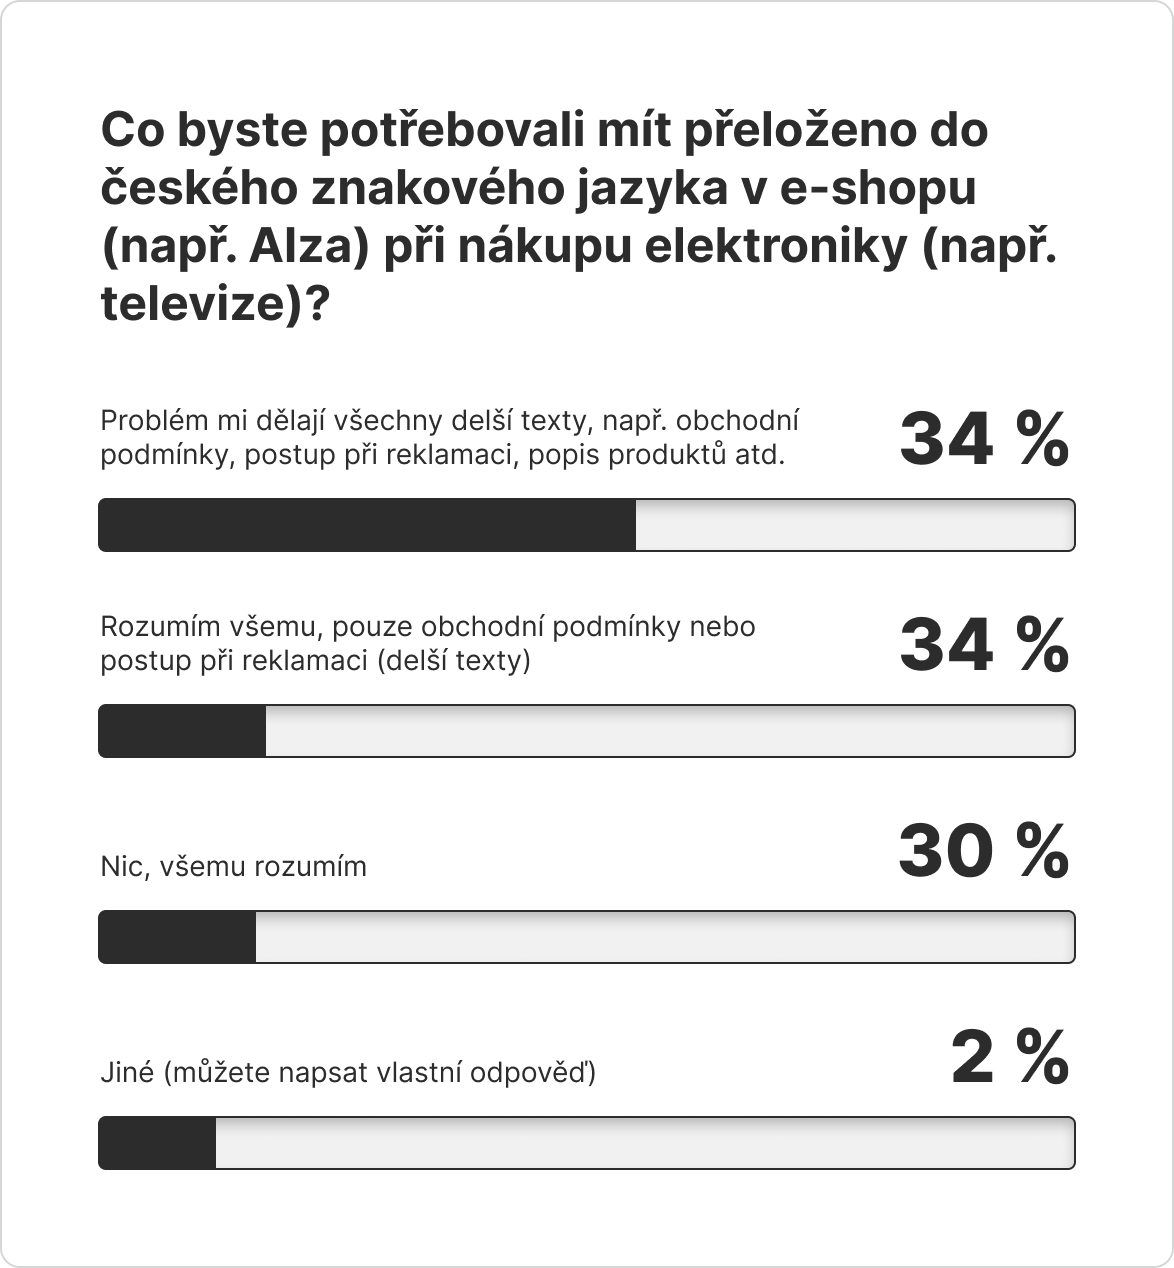 Infografika s výsledky dotazníku pro otázku: Co byste potřebovali mít přeloženo do českého znakového jazyka v e-shopu (např. Alza) při nákupu elektroniky (např. televize)? 34 % respondentů vybralo odpověď „Problém mi dělají všechny delší texty, např. obchodní podmínky, postup při reklamaci, popis produktů atd.“, 34 % vybralo odpověď „Rozumím všemu, pouze obchodní podmínky nebo postup při reklamaci (delší texty)“, 30 % vybralo odpověď „Nic, všemu rozumím“ a 2 % vybralo „Jiné“.